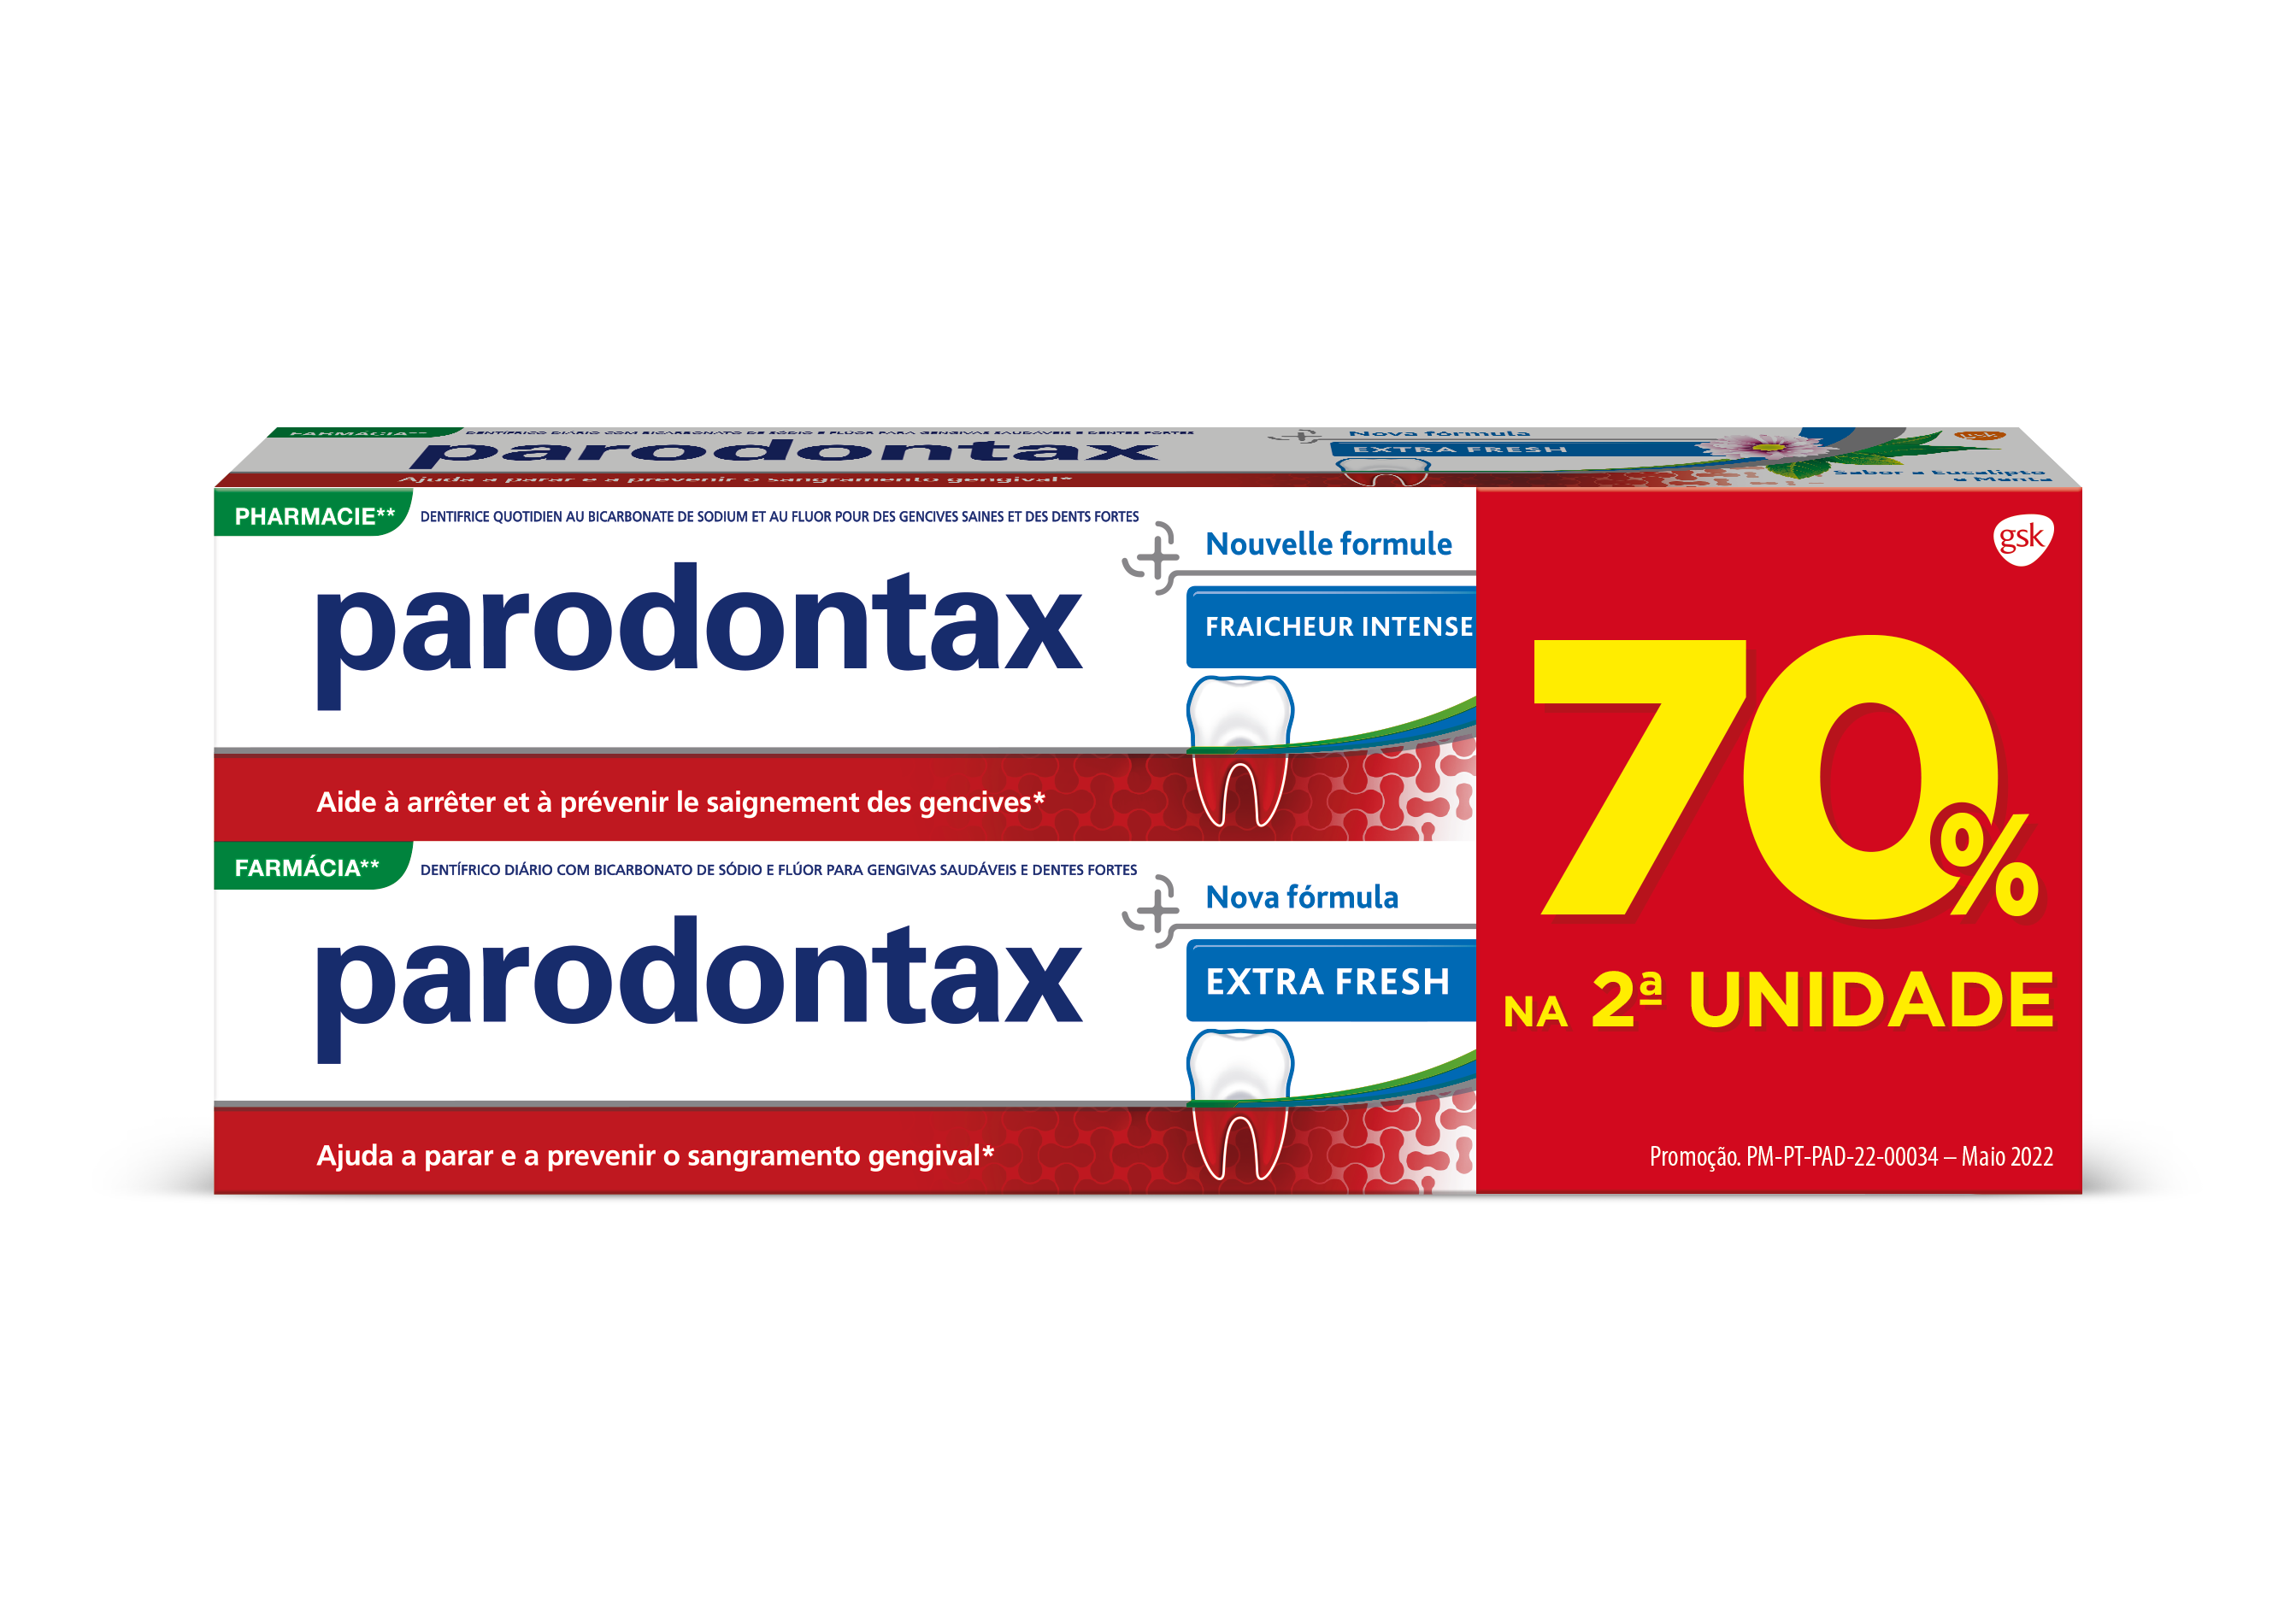 Parodontax Extra Fresh 2x75ml com desconto de 70% na 2ª unidade